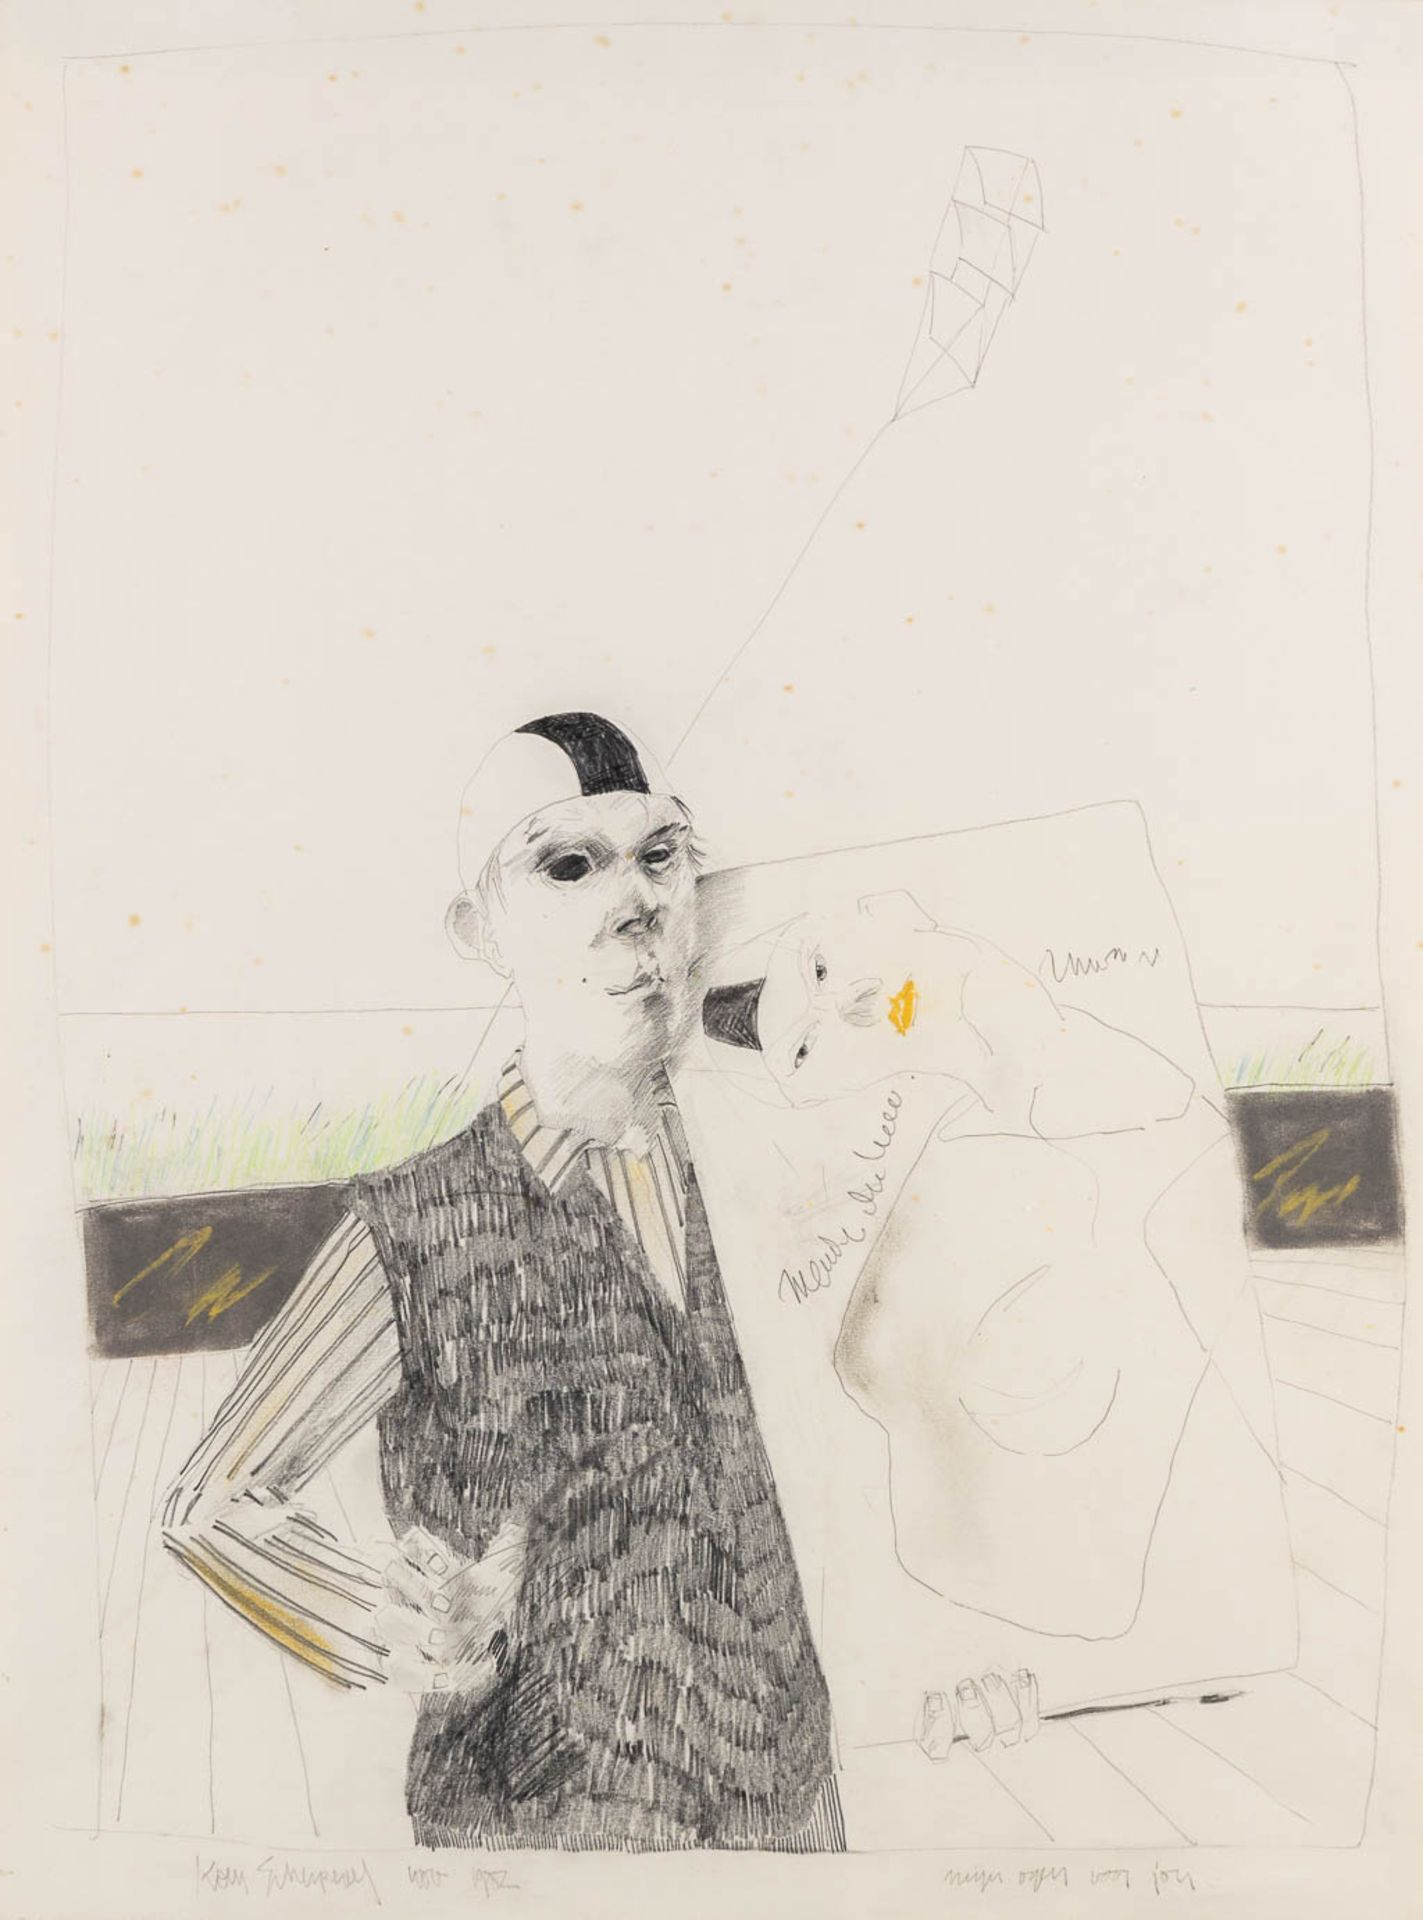 Koen SCHERPEREEL (1961-1997) 'Mijn Ogen Voor Jou', November 1982. Pencil on paper. (W:52 x H:70 cm)